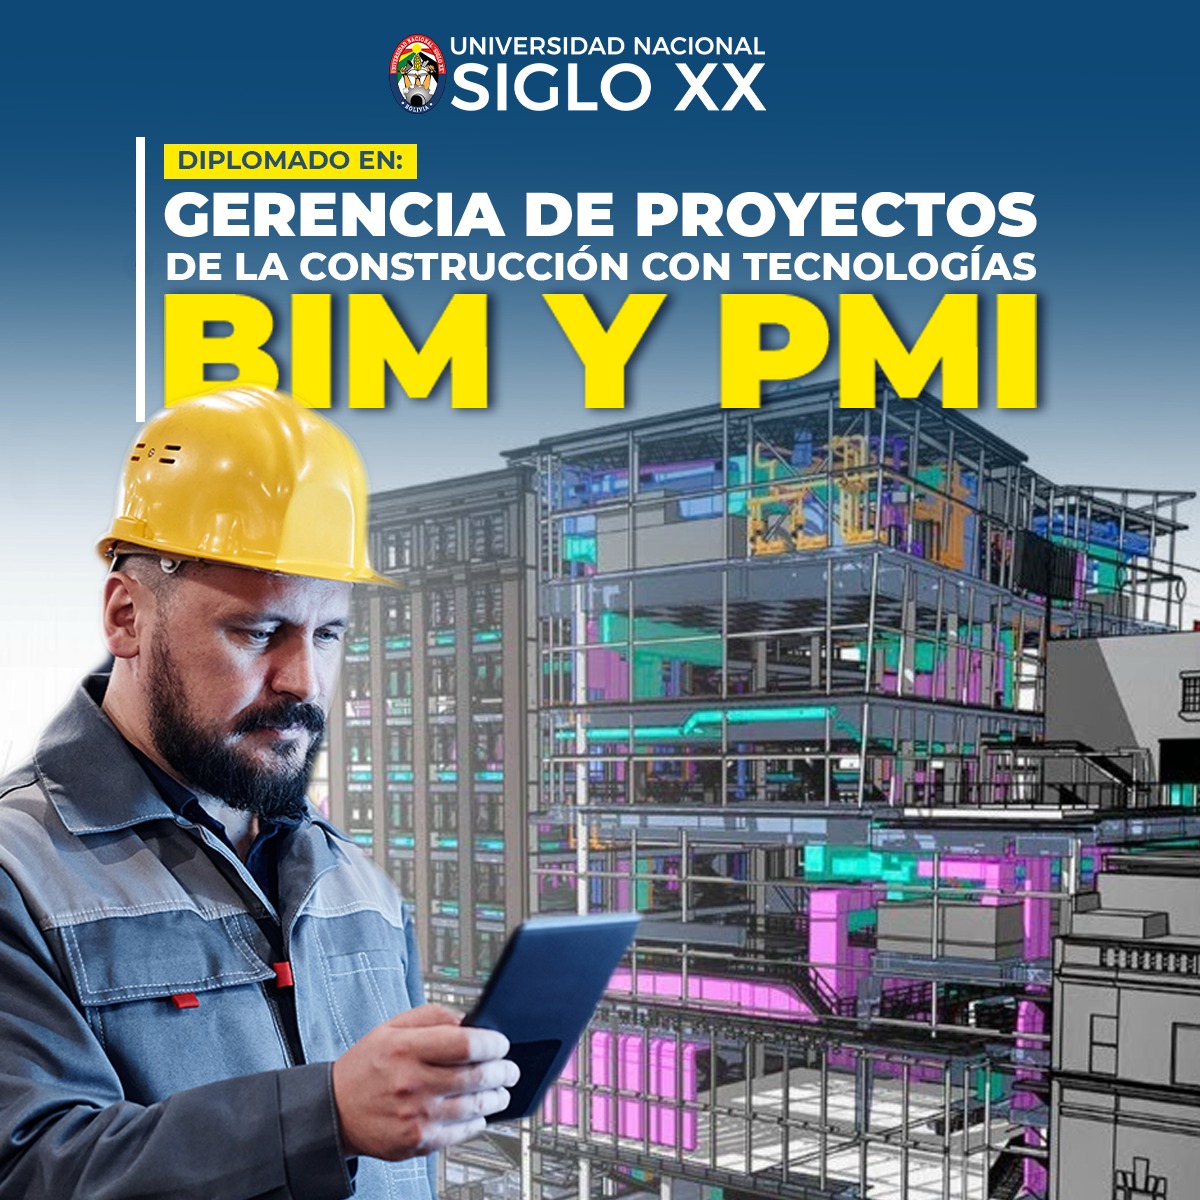 Diplomado DIPLOMADO EN GERENCIA DE PROYECTOS DE LA CONSTRUCCIÓN CON TECNOLOGÍAS BIM Y PMI